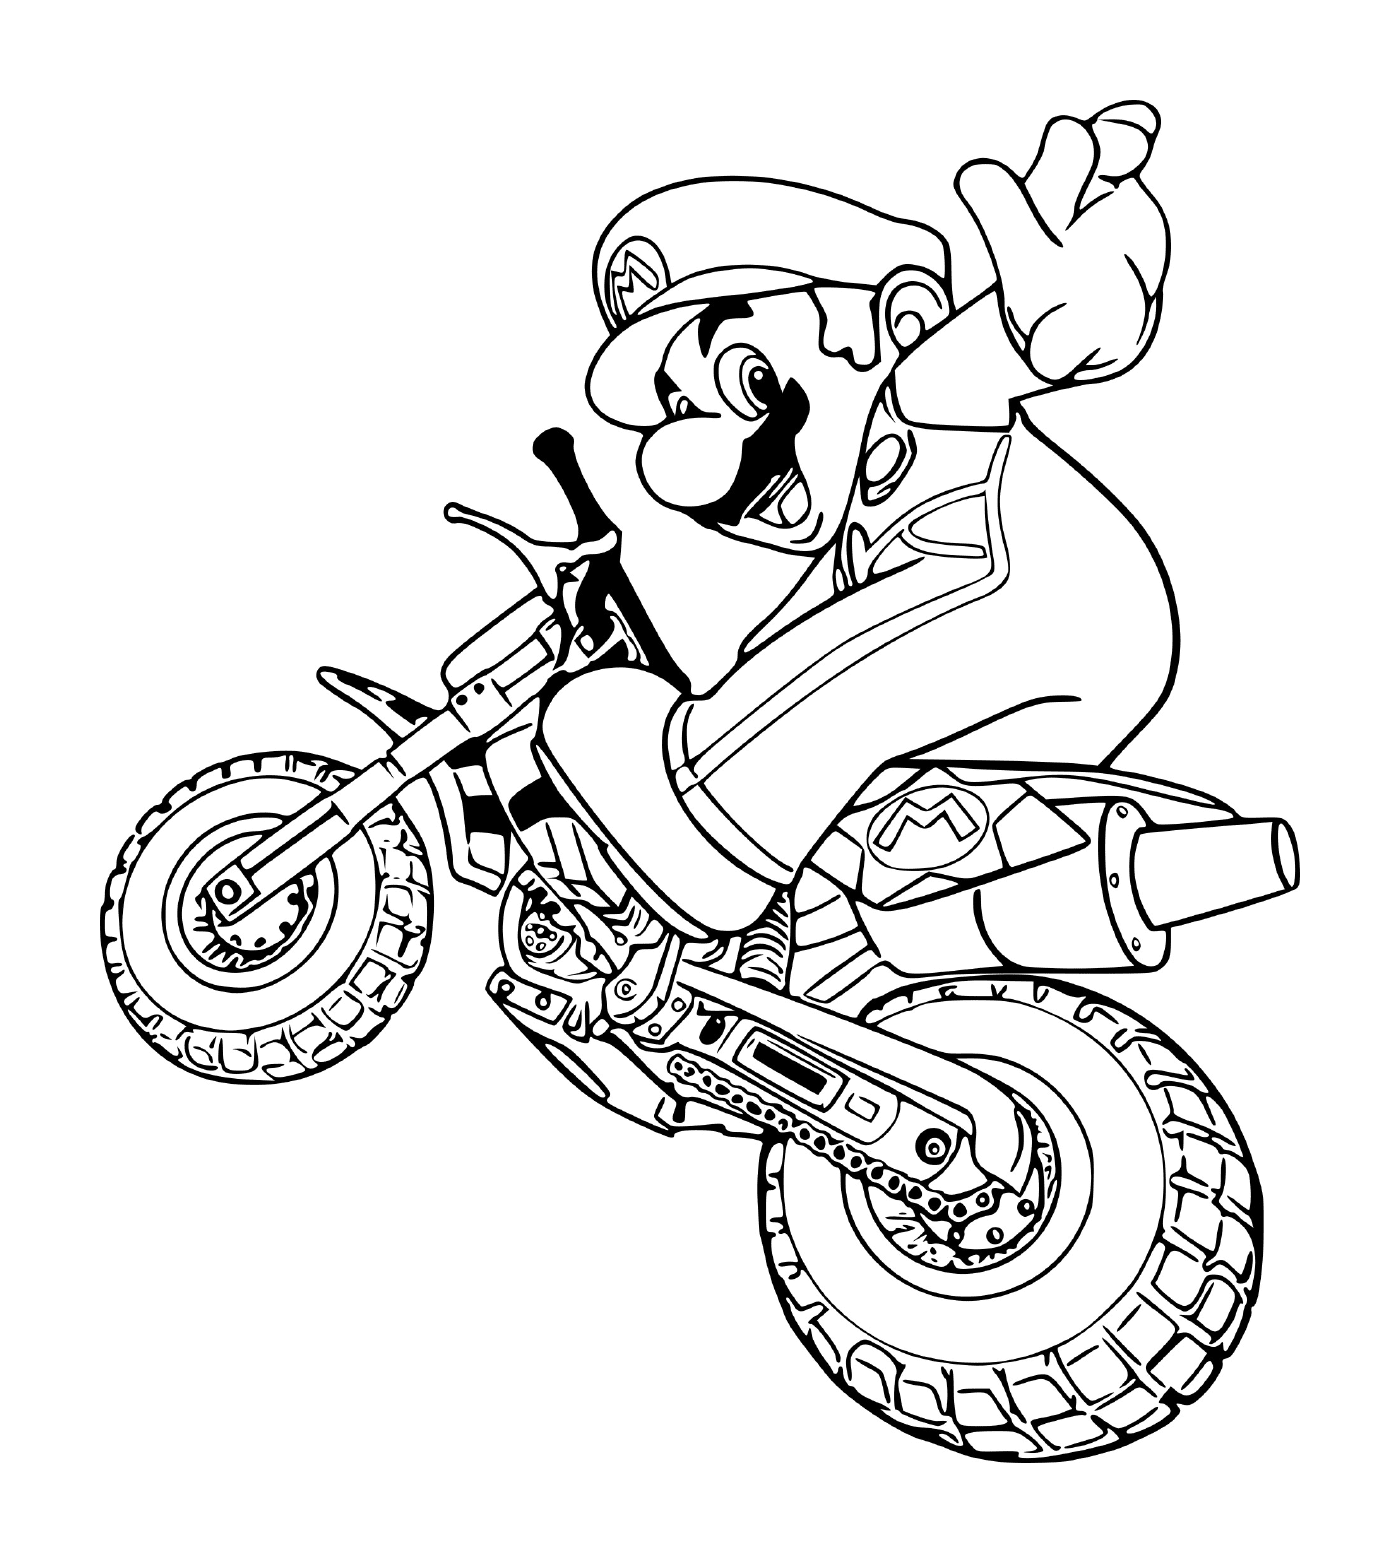  Марио на мотоцикле 